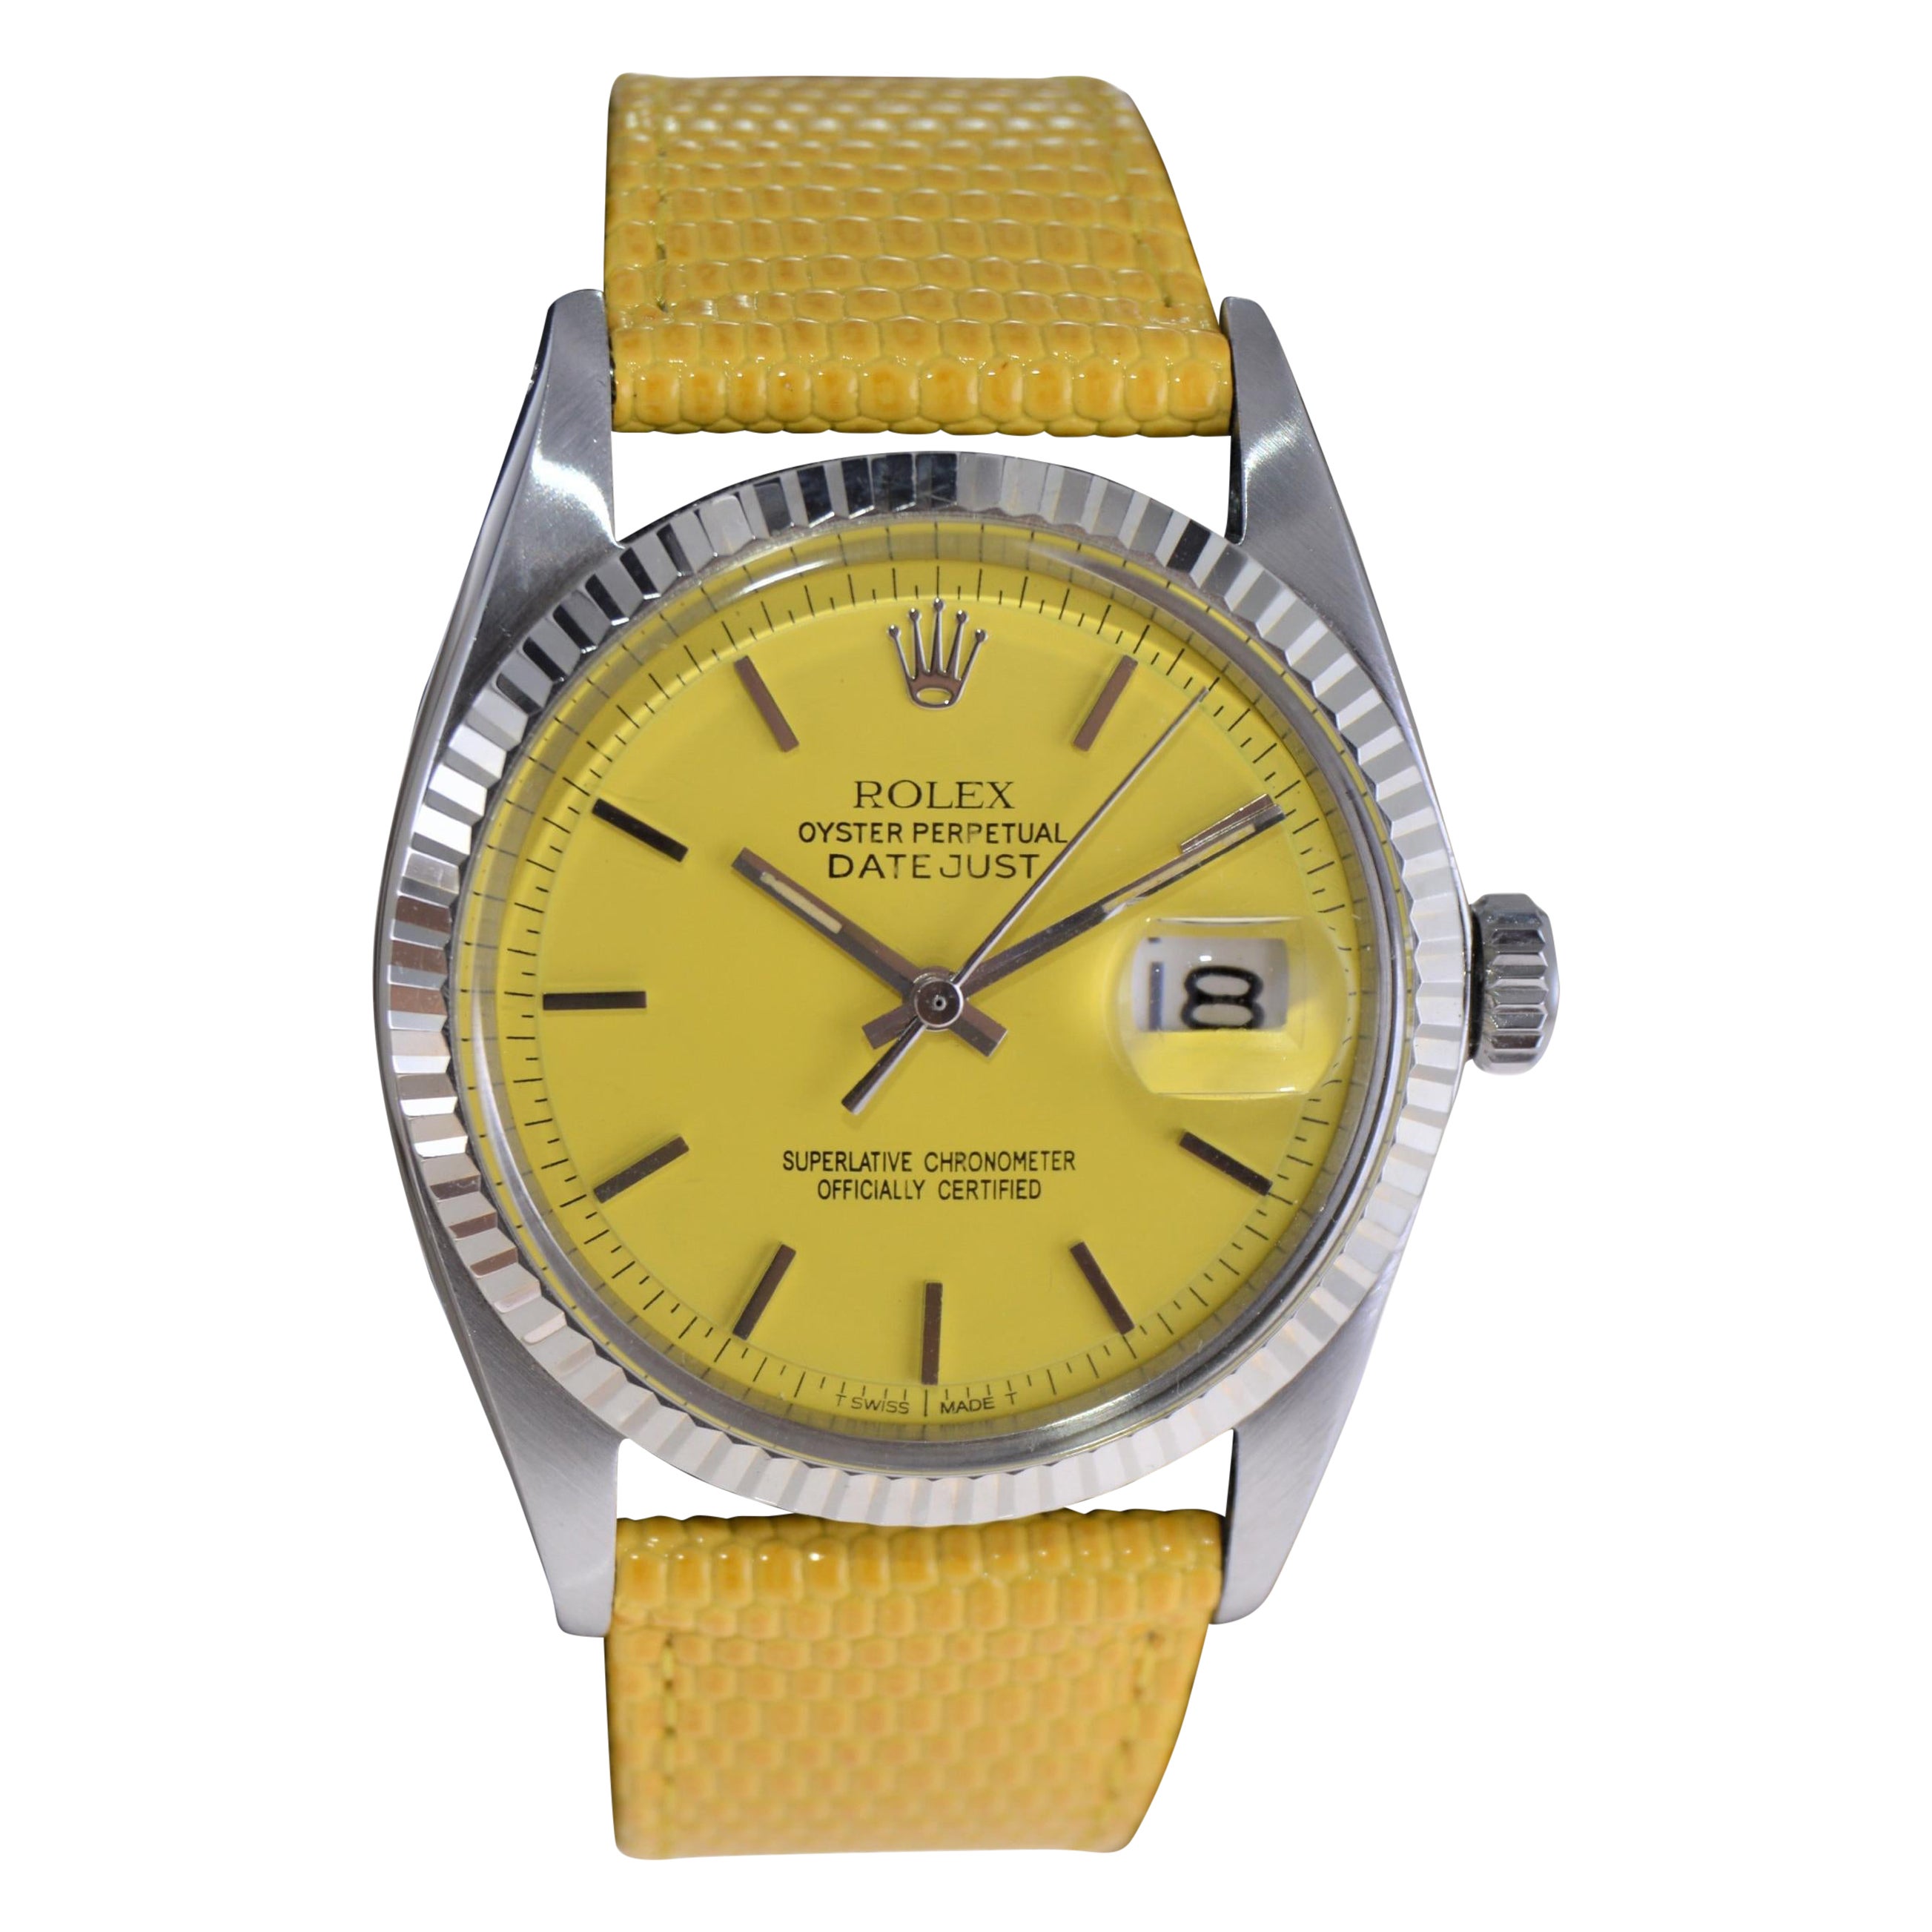 Rolex Oyster Perpetual Datejust avec cadran jaune personnalisé et bracelet des années 1960